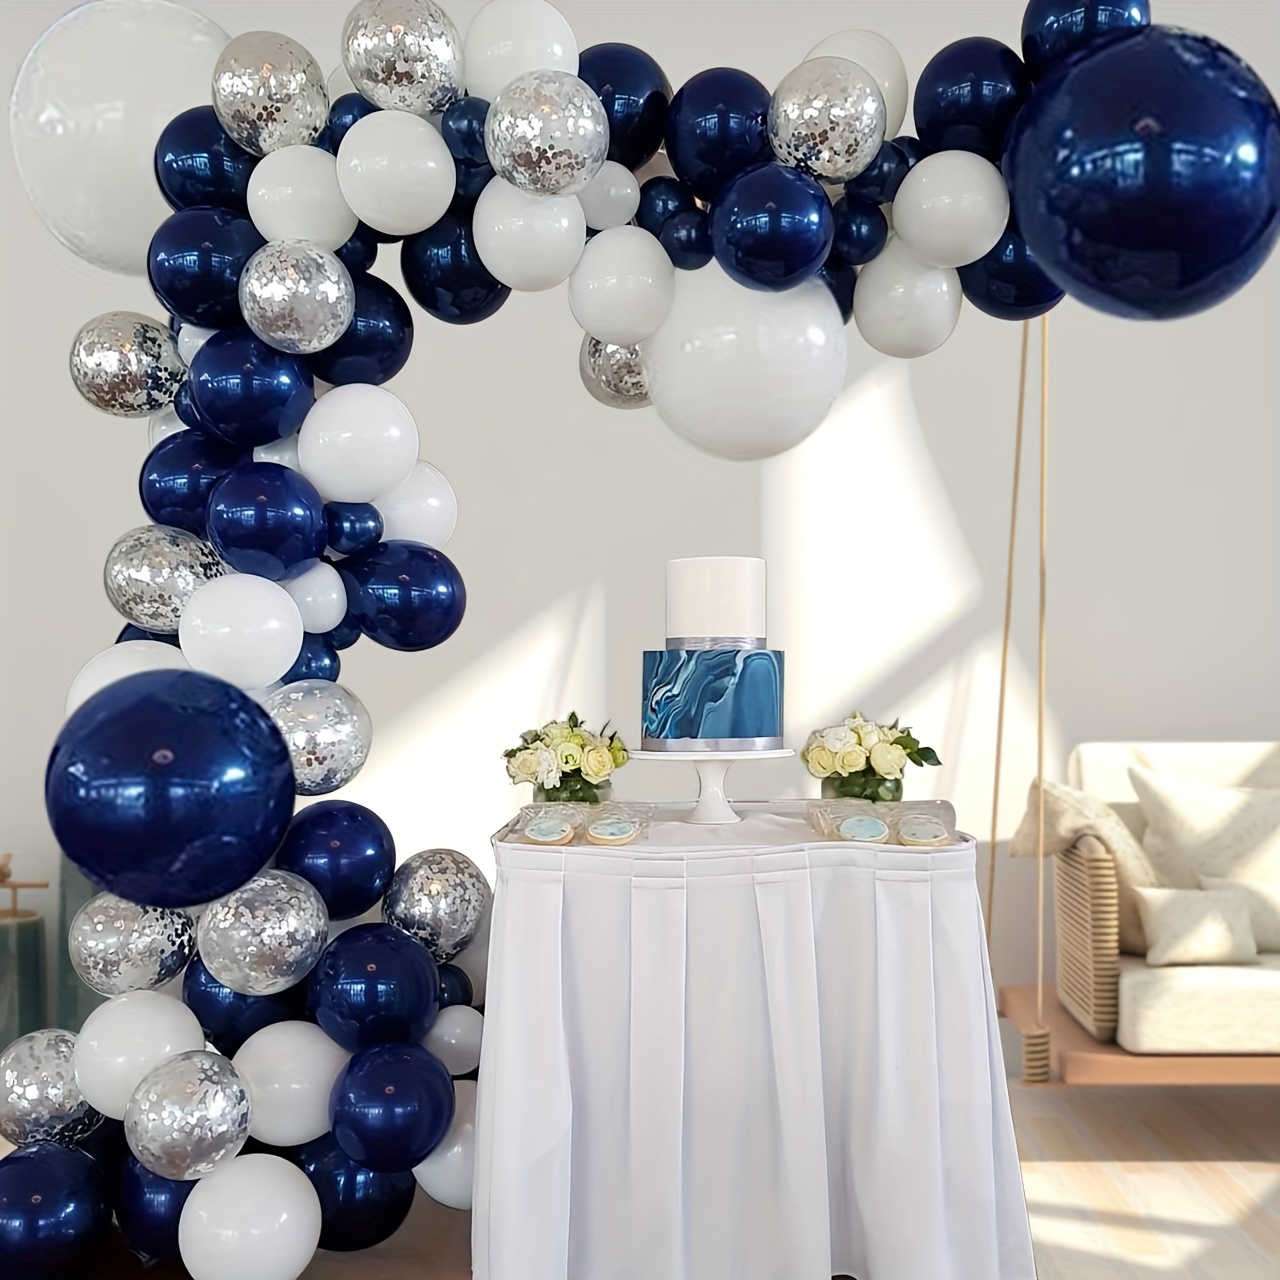 Ballon gonflable BLANC en latex 30 cm, déco de salle mariage